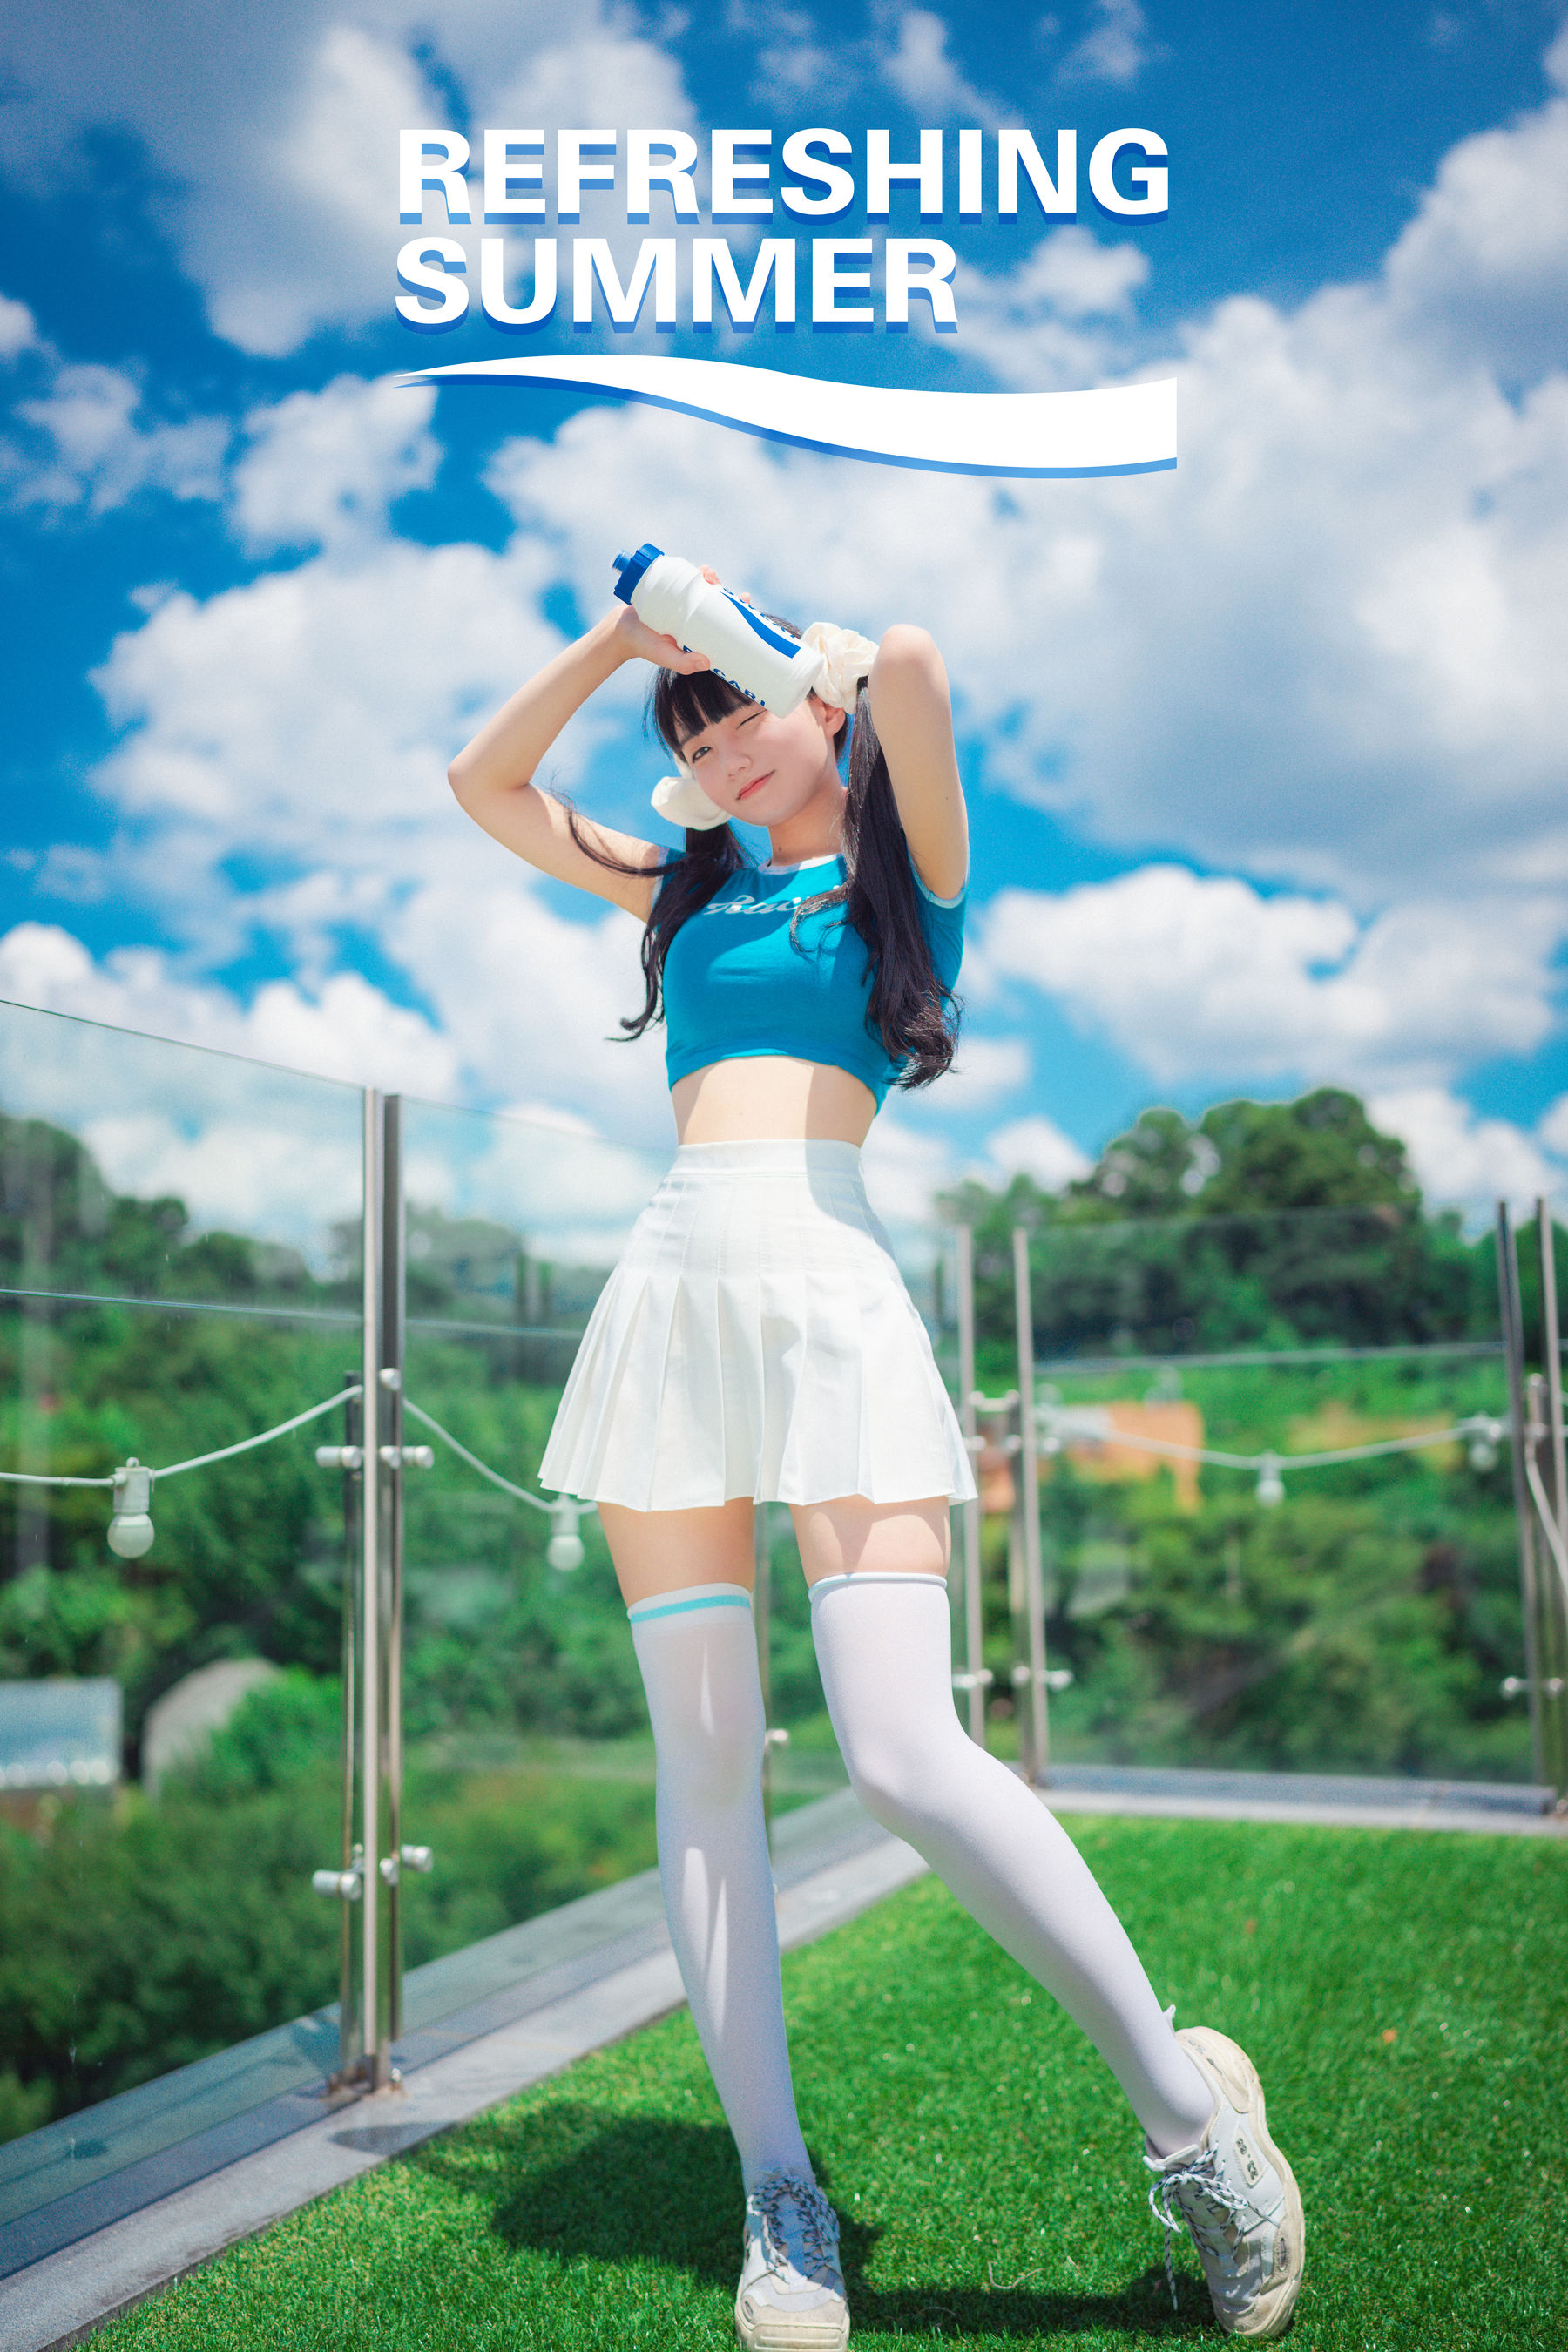 [DJAWA] Jenny - Refreshing Summer 写真套图(1)